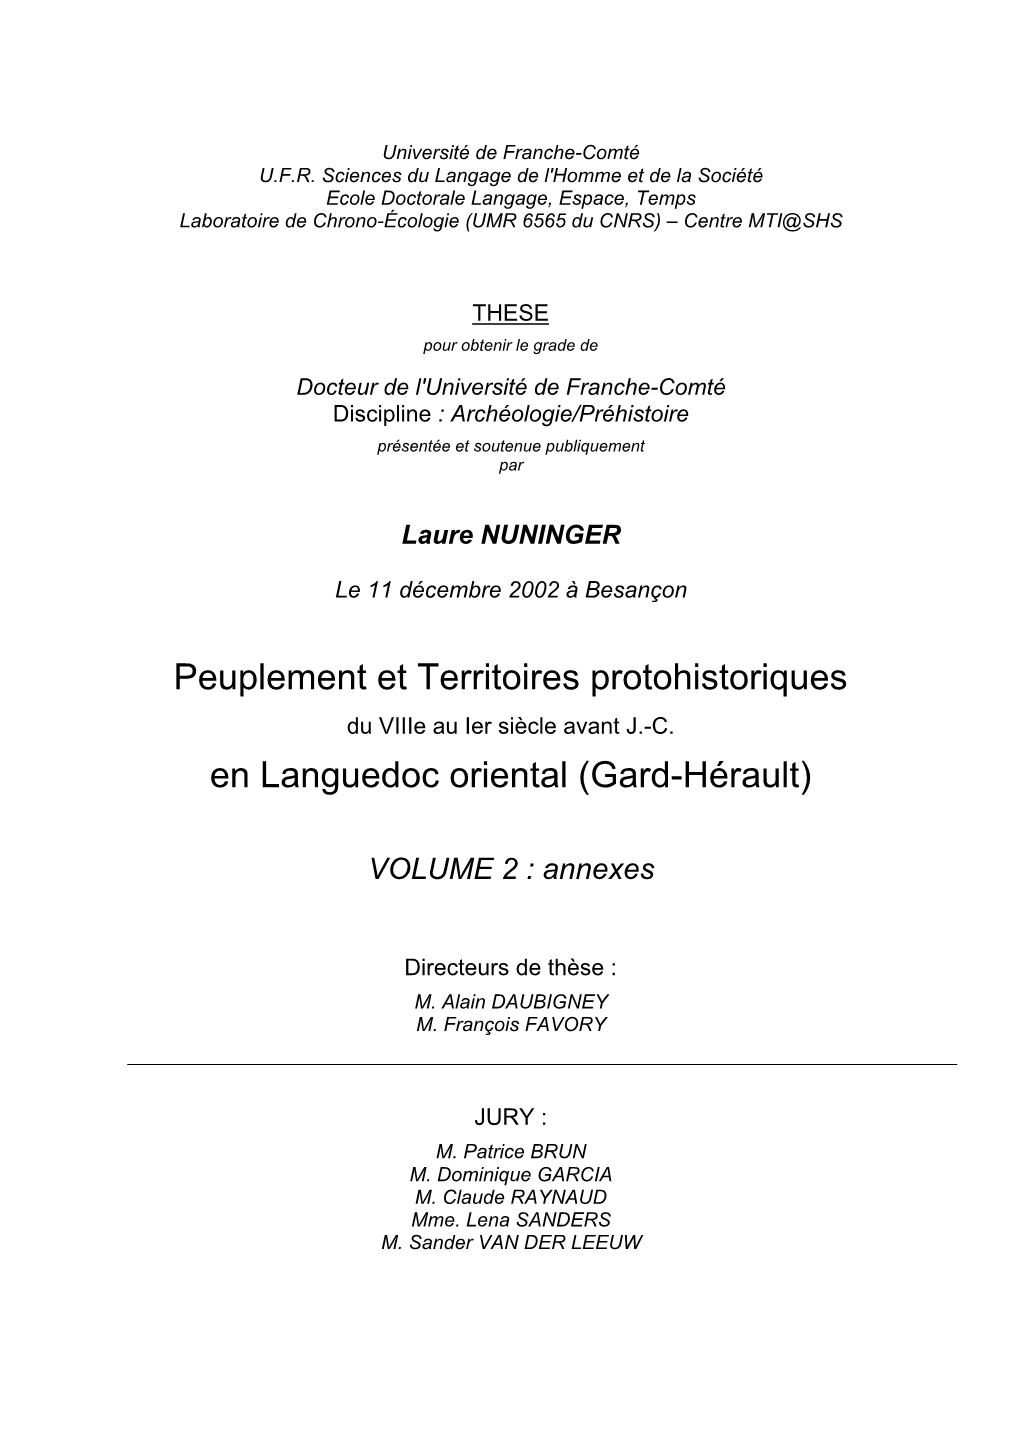 Peuplement Et Territoires Protohistoriques En Languedoc Oriental